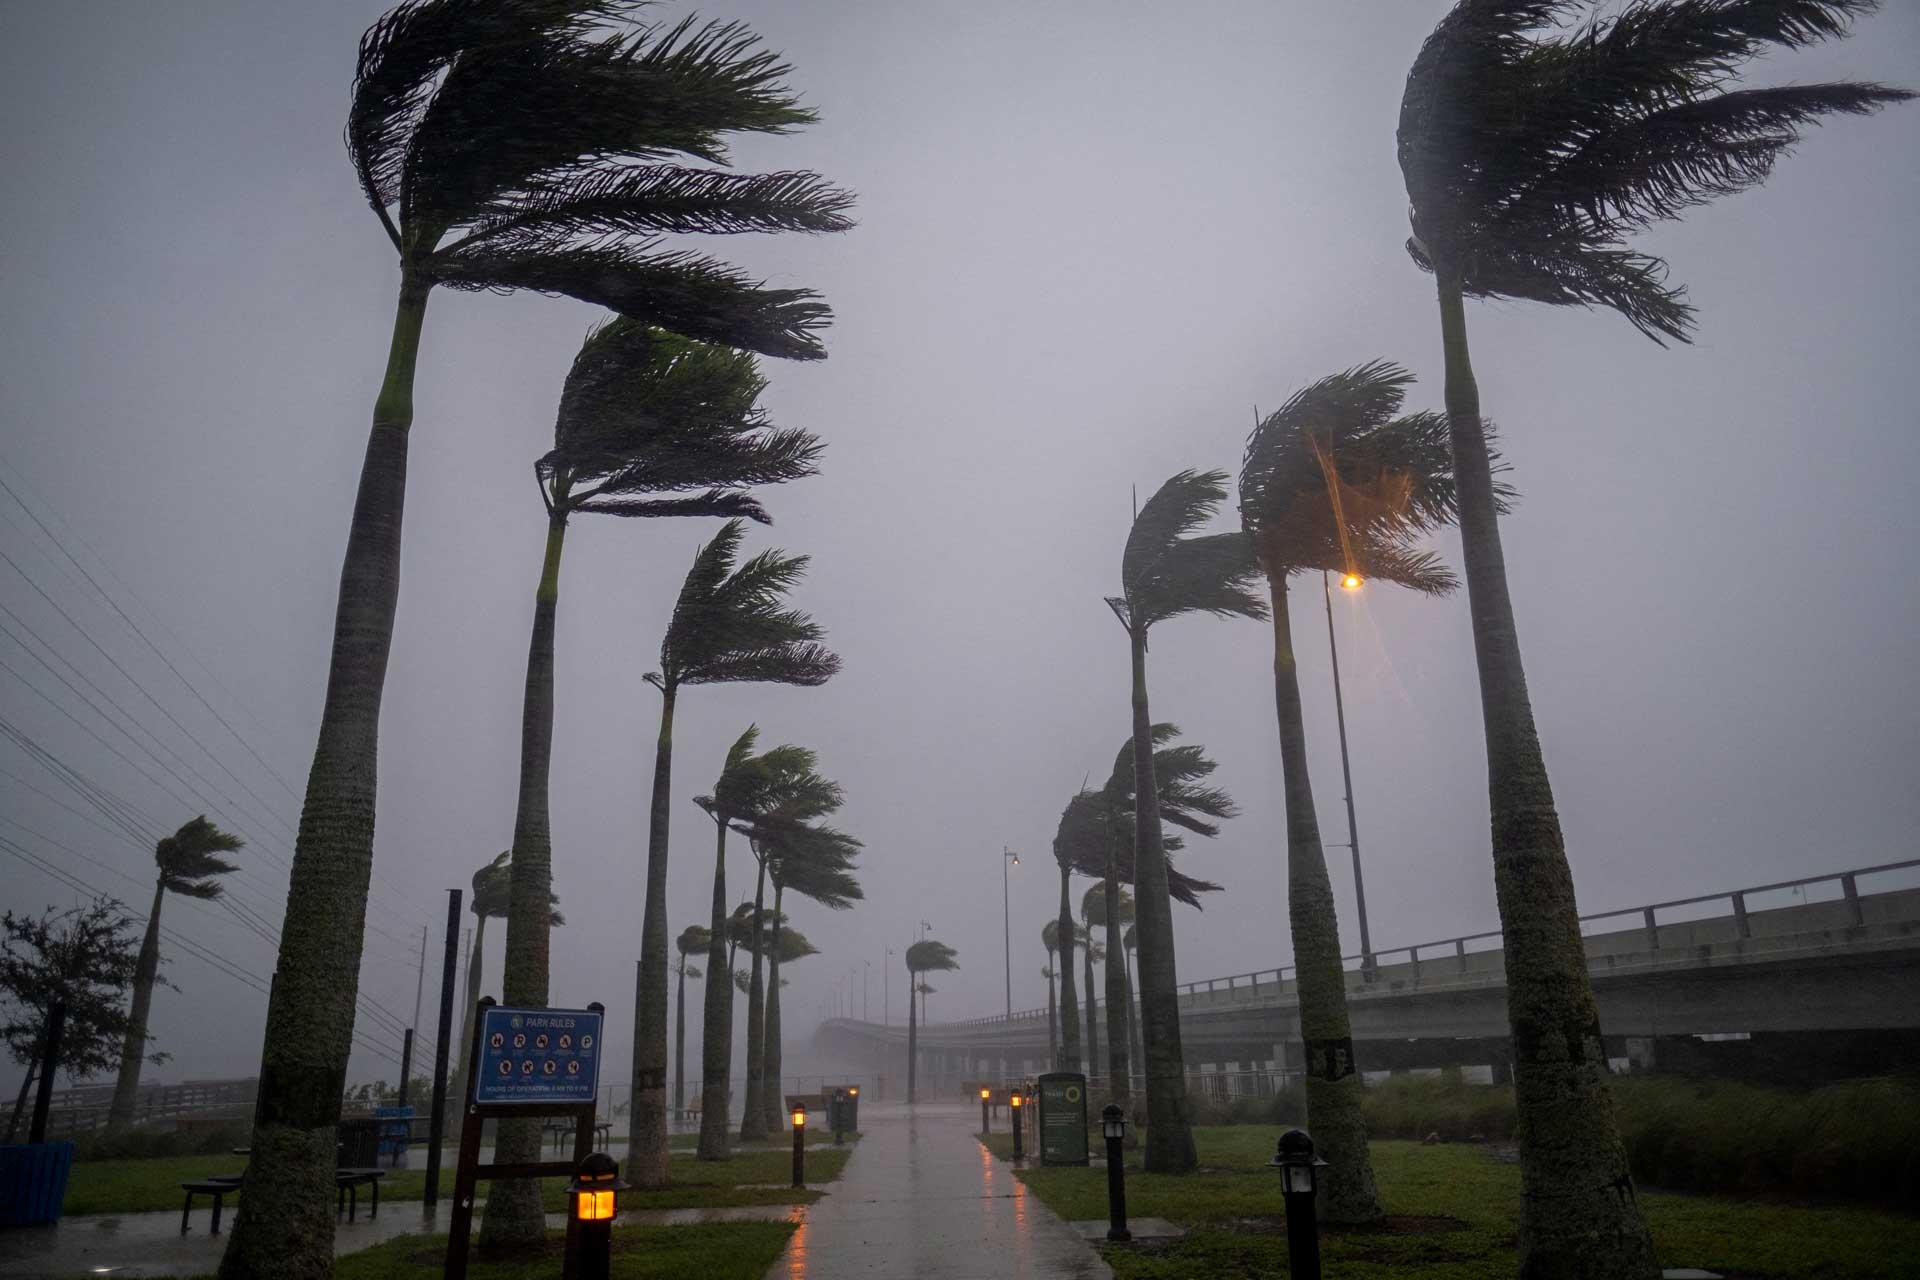 Furacão Ian enfraquece e vira tempestade tropical, mas deixa 1,8 milhão de pessoas sem energia na Flórida